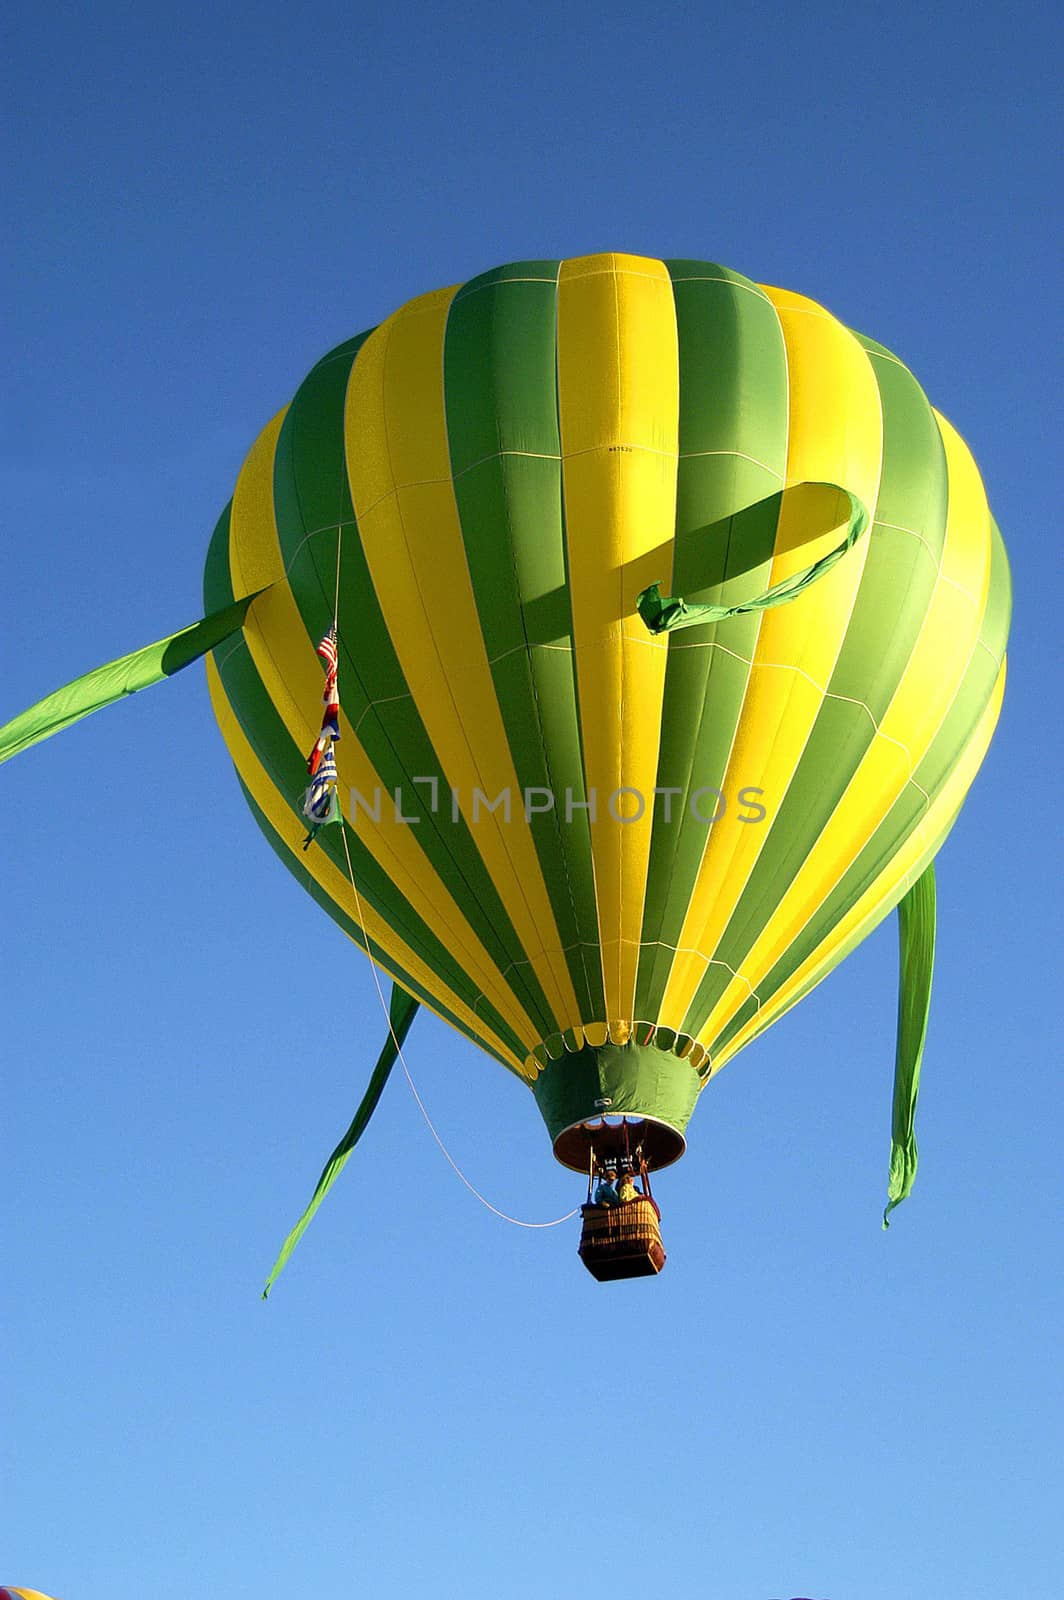 Balloon by cestes001